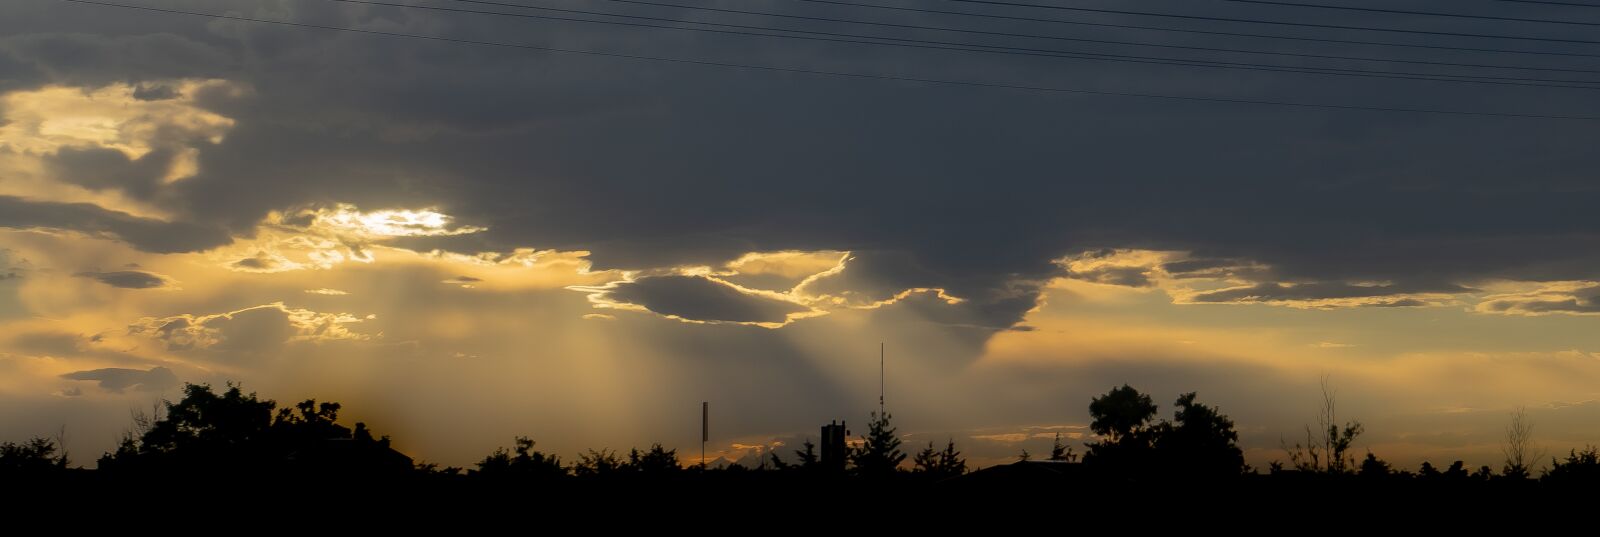 Sony FE 28-70mm F3.5-5.6 OSS sample photo. Sunset, sky, landscape photography